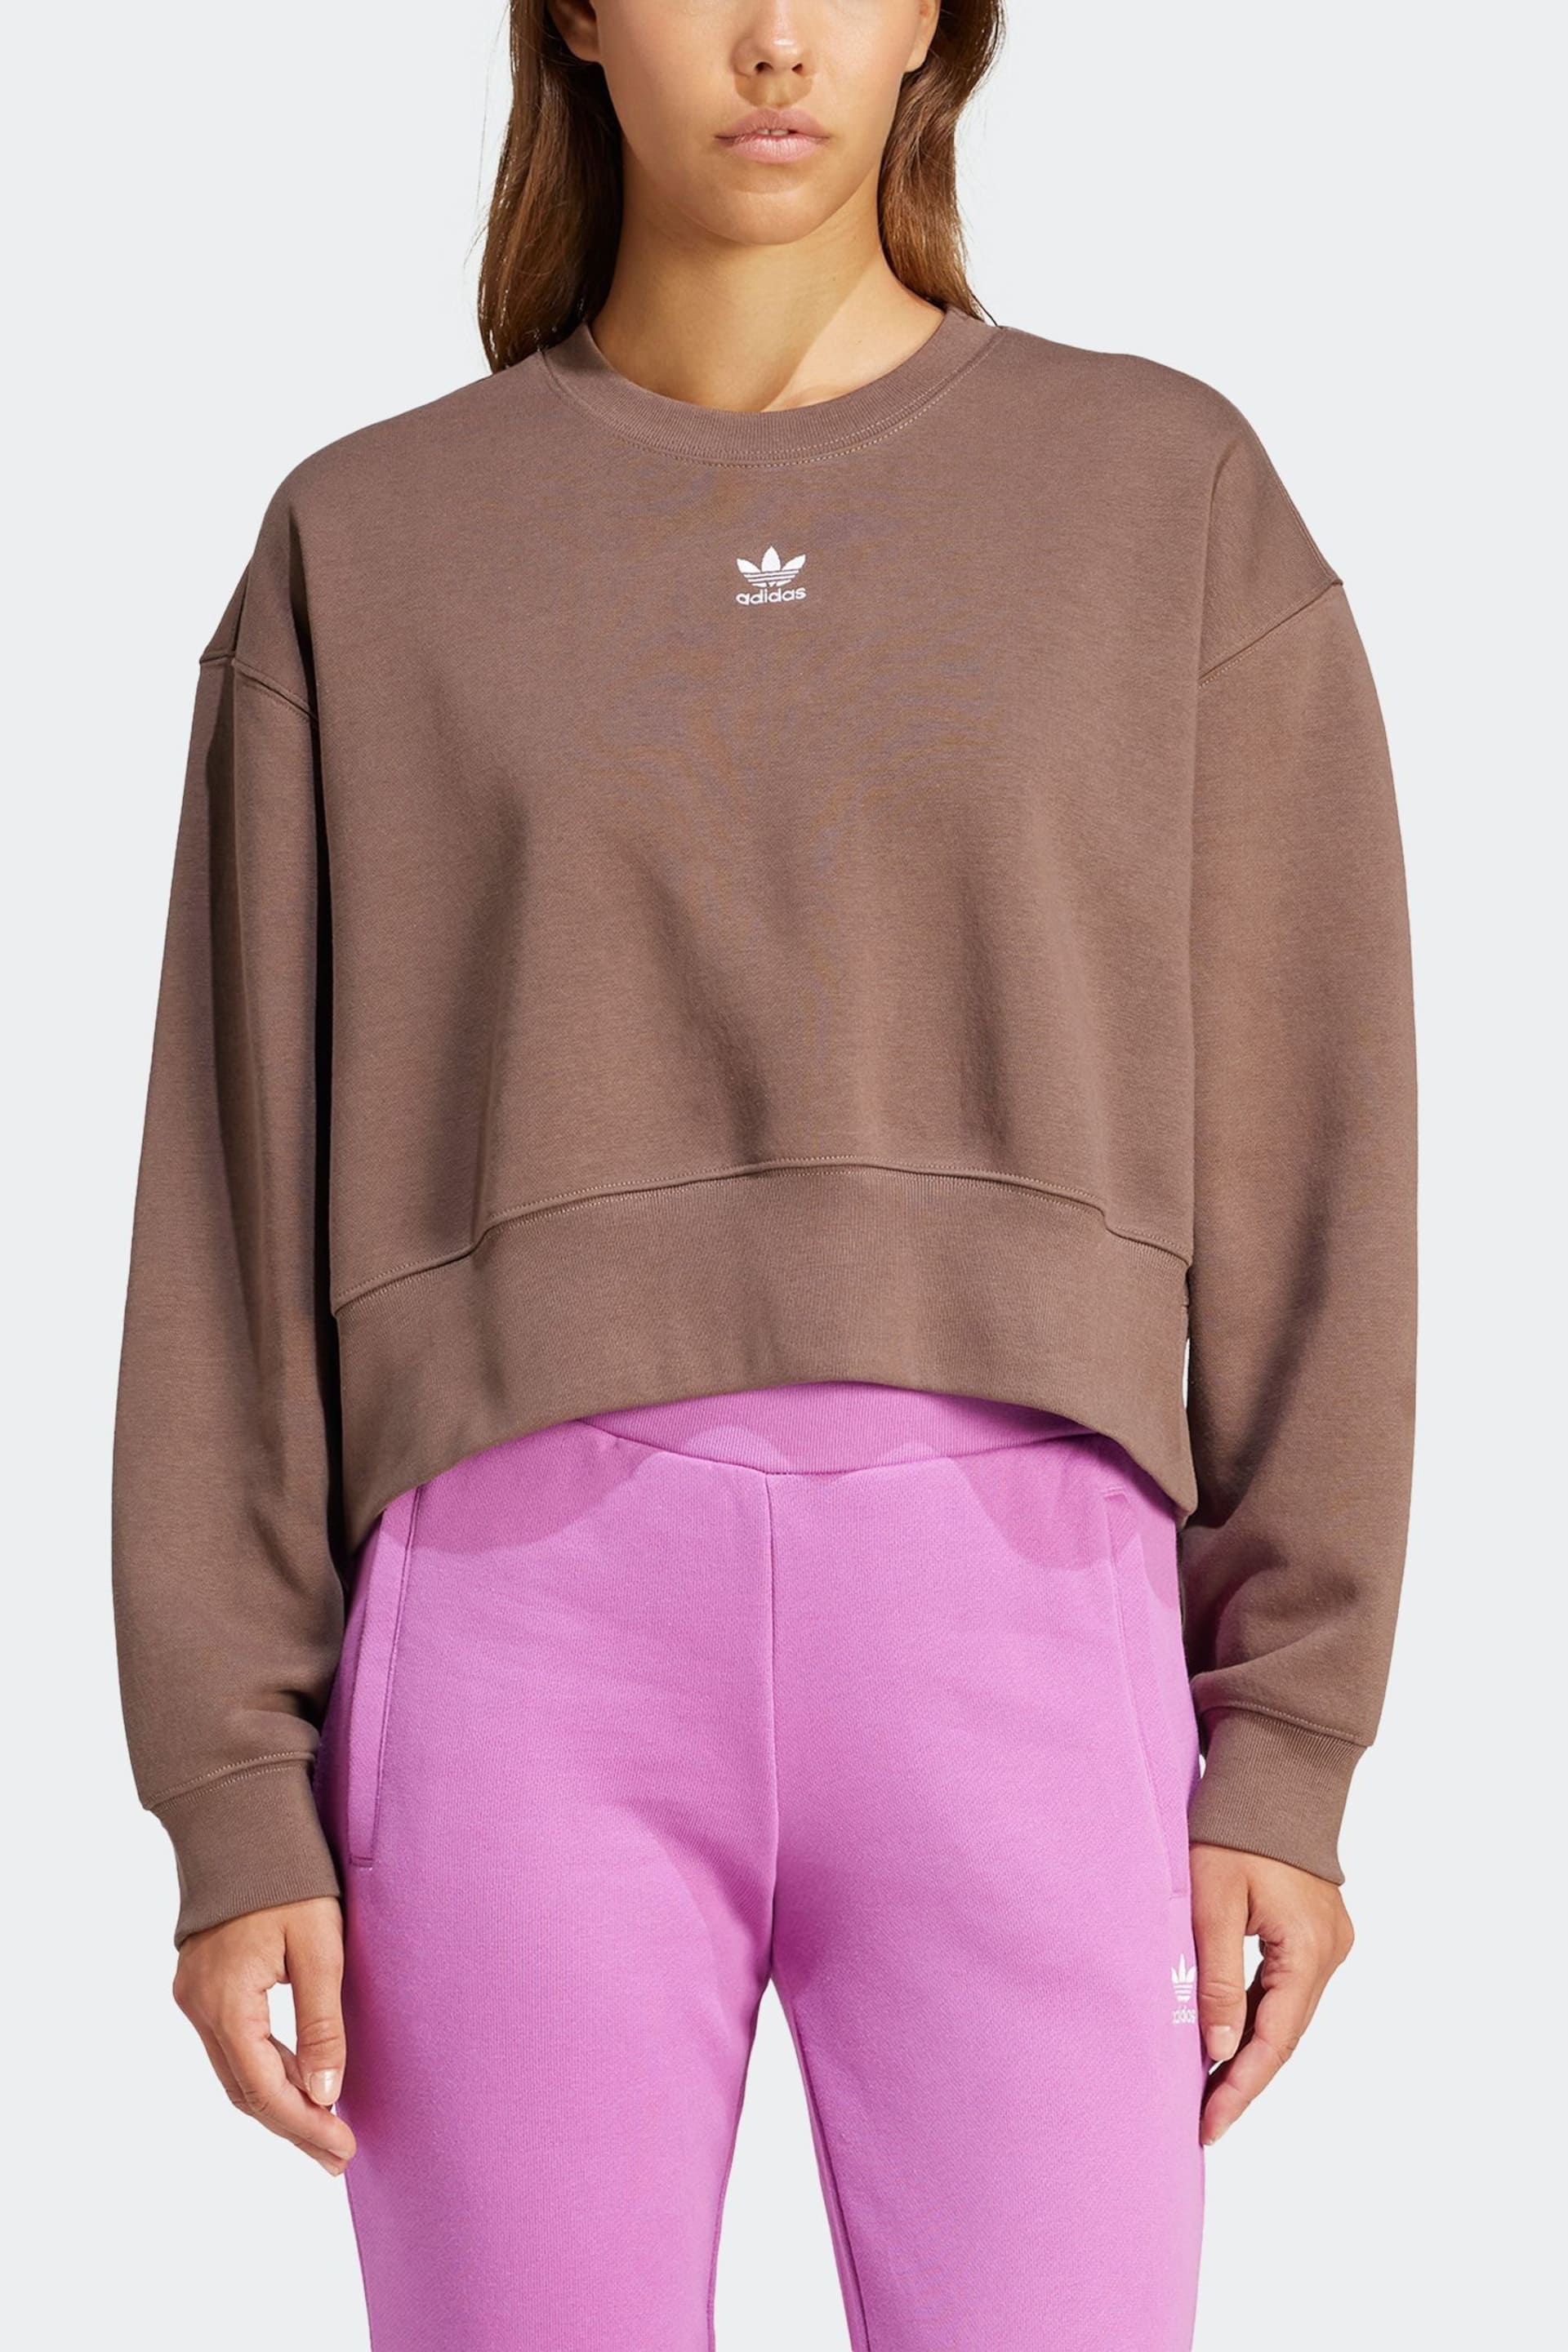 adidas Originals Adicolor Essentials Crew Sweatshirt - Image 4 of 7